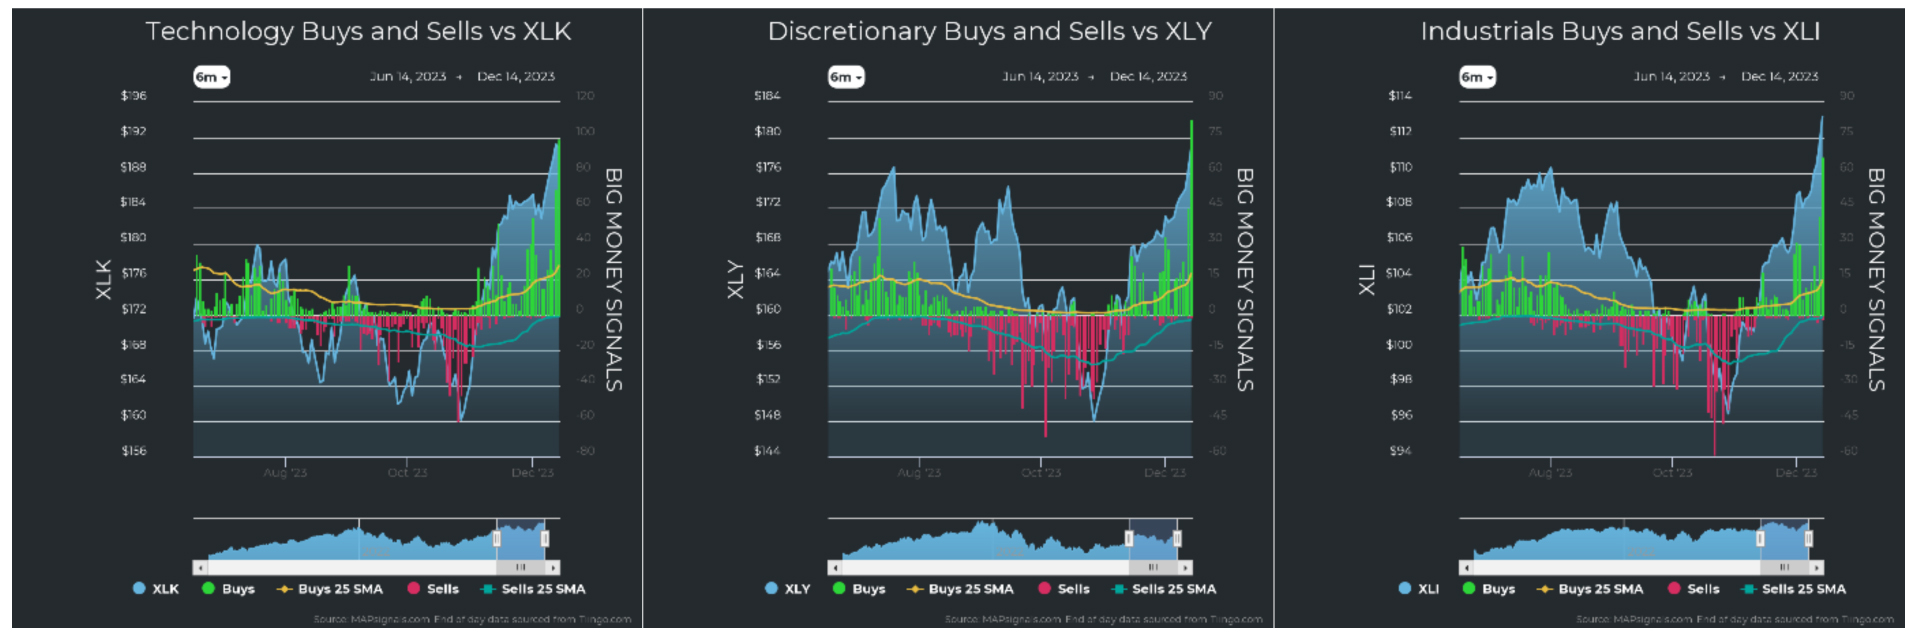 Technology-Buys-vs-XLK